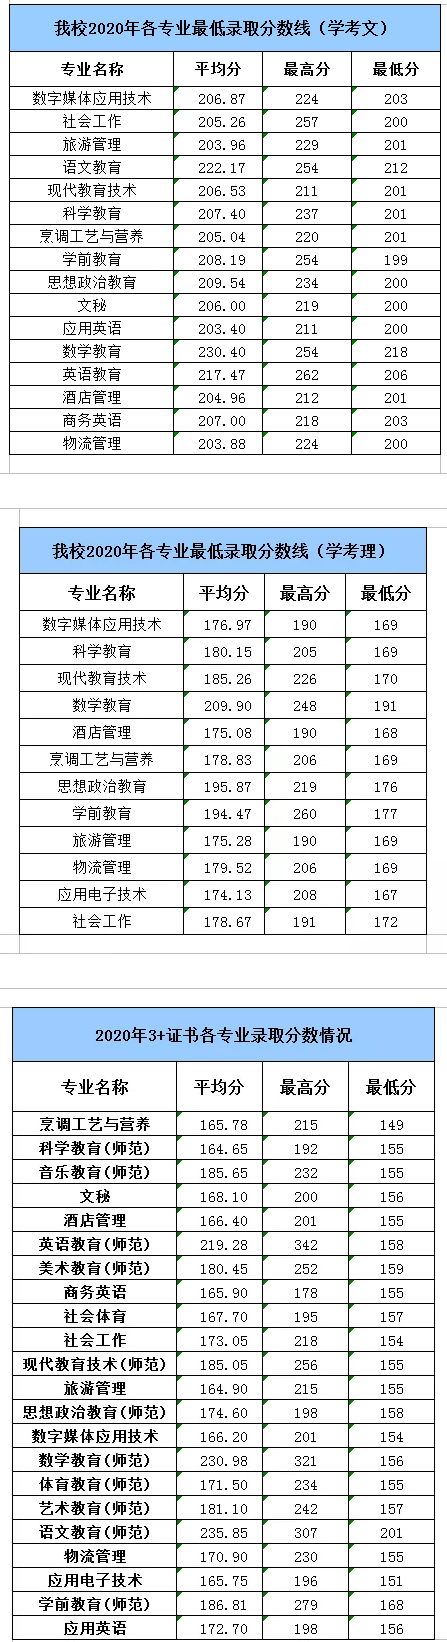 2021湛江幼儿师范专科学校春季高考分数线汇总(含2018-2020历年录取)